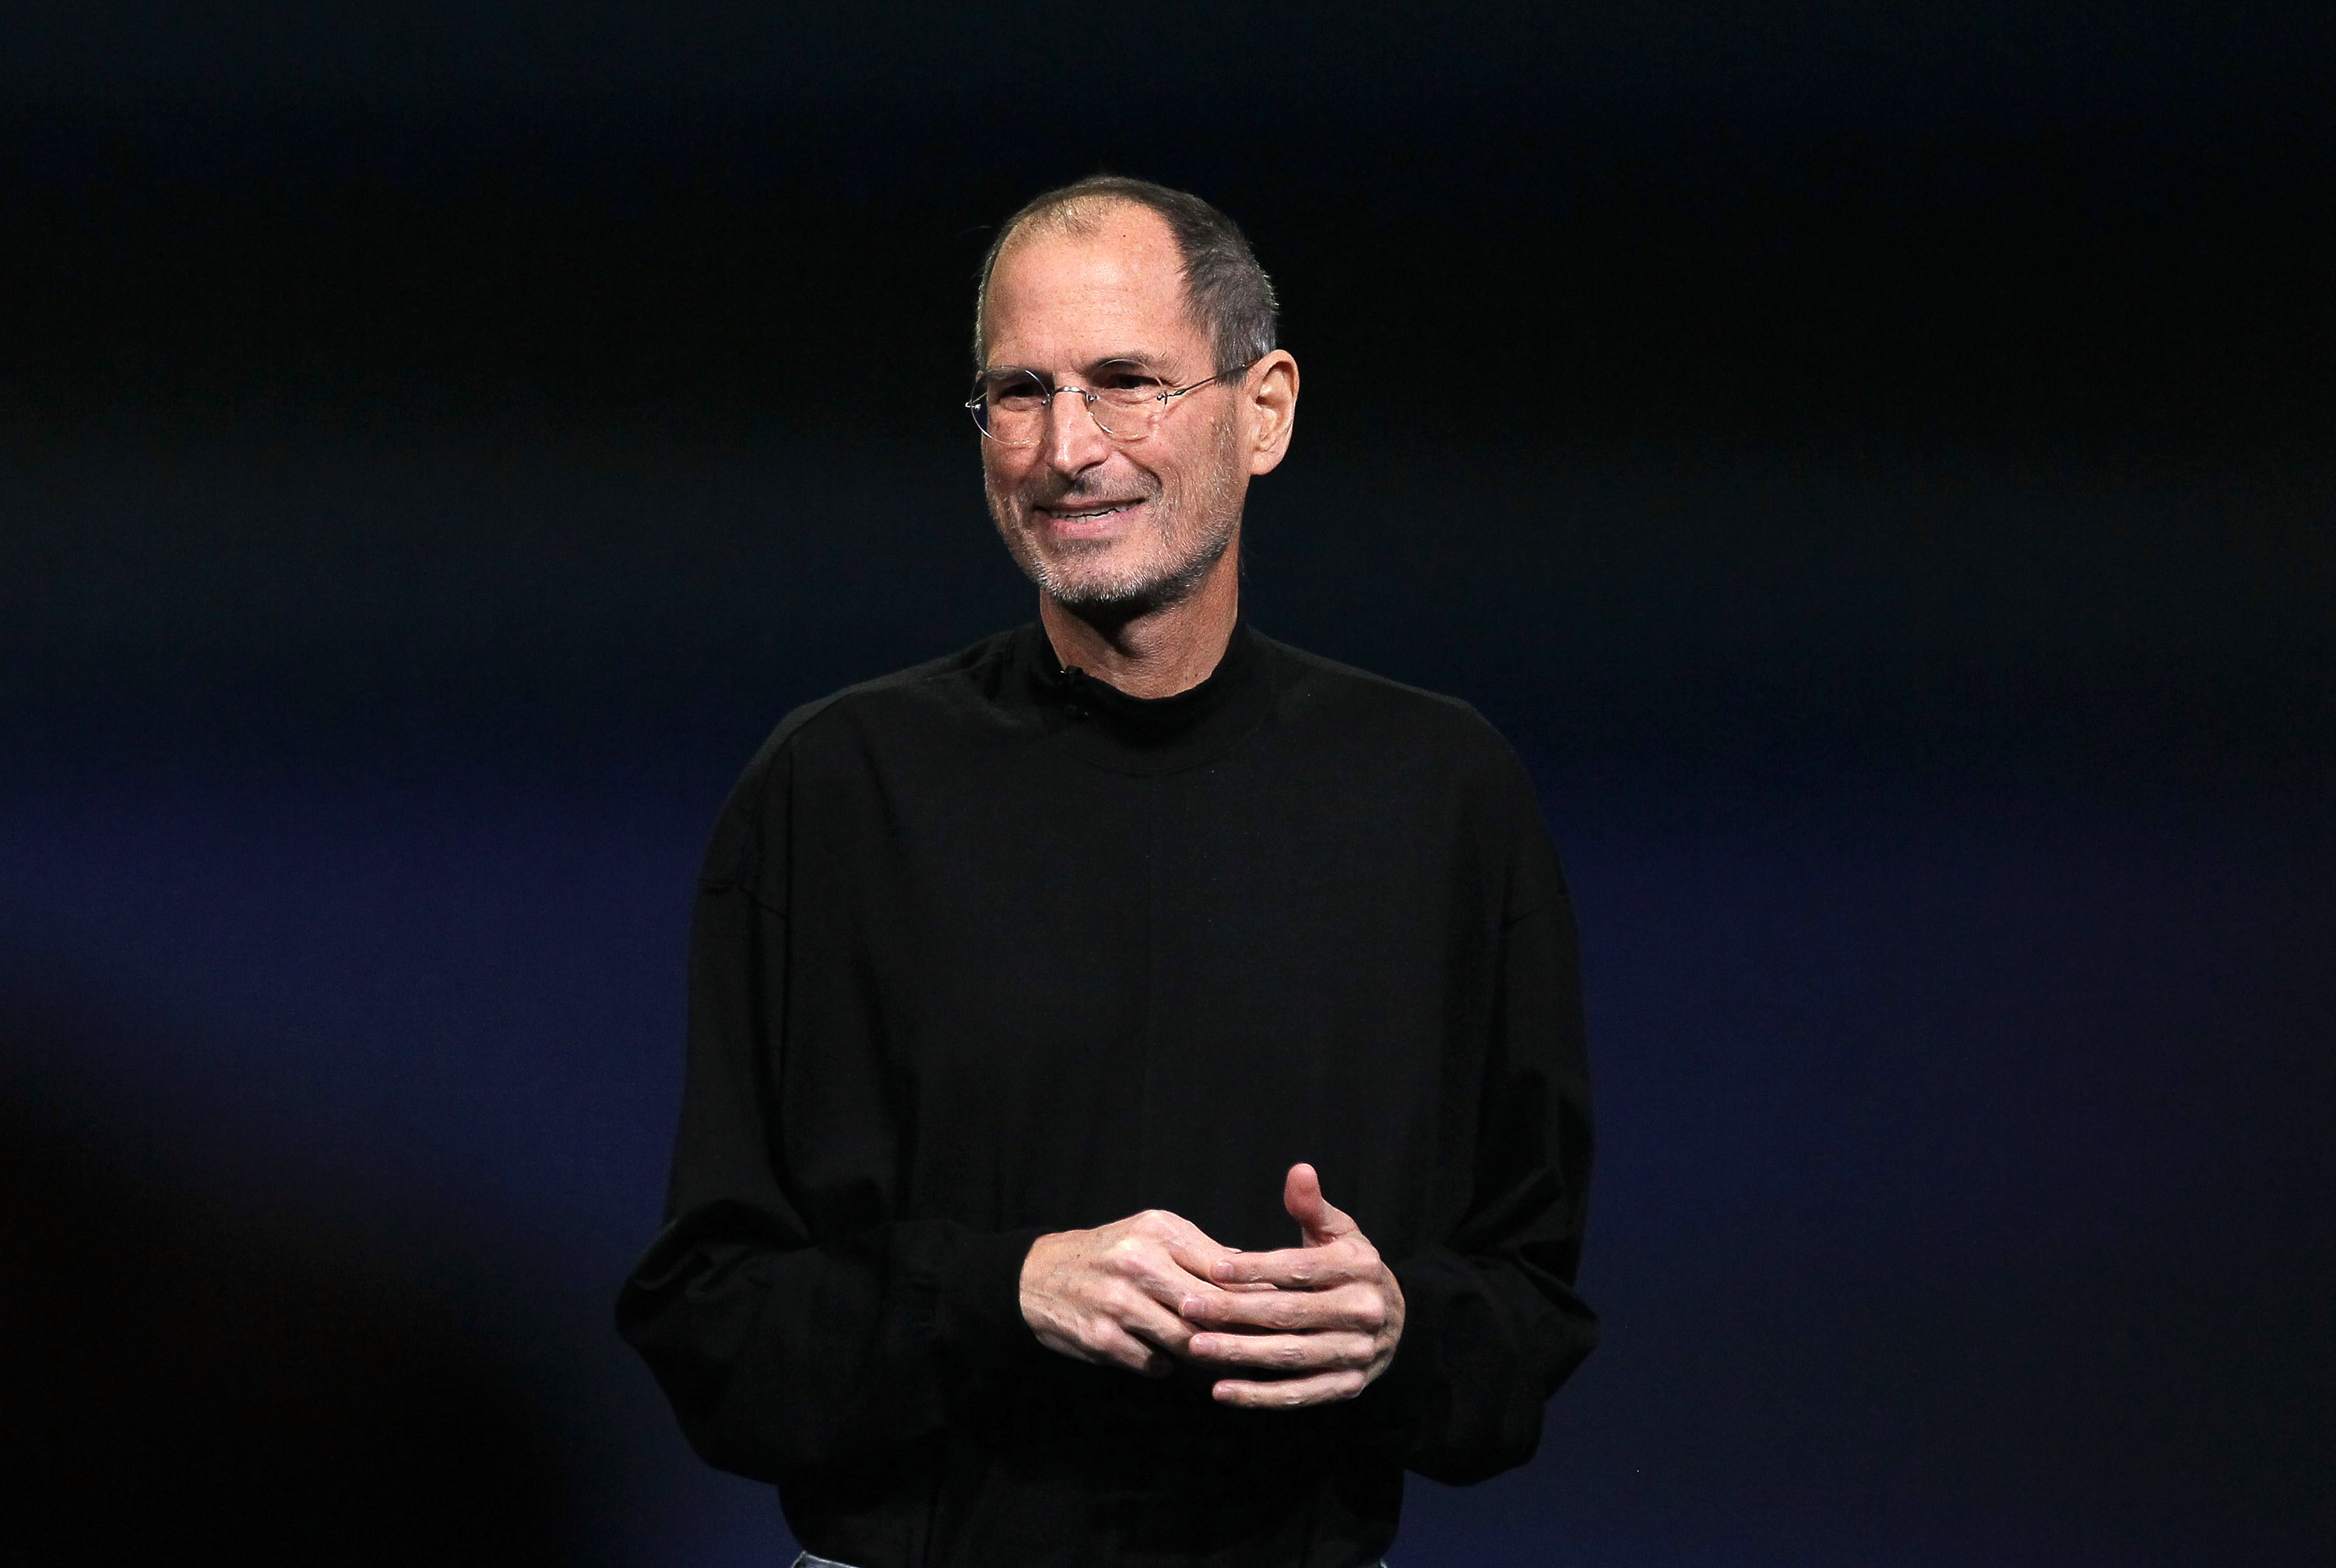 maiores-empreendedores-do-mundo - imagem do Steve Jobs